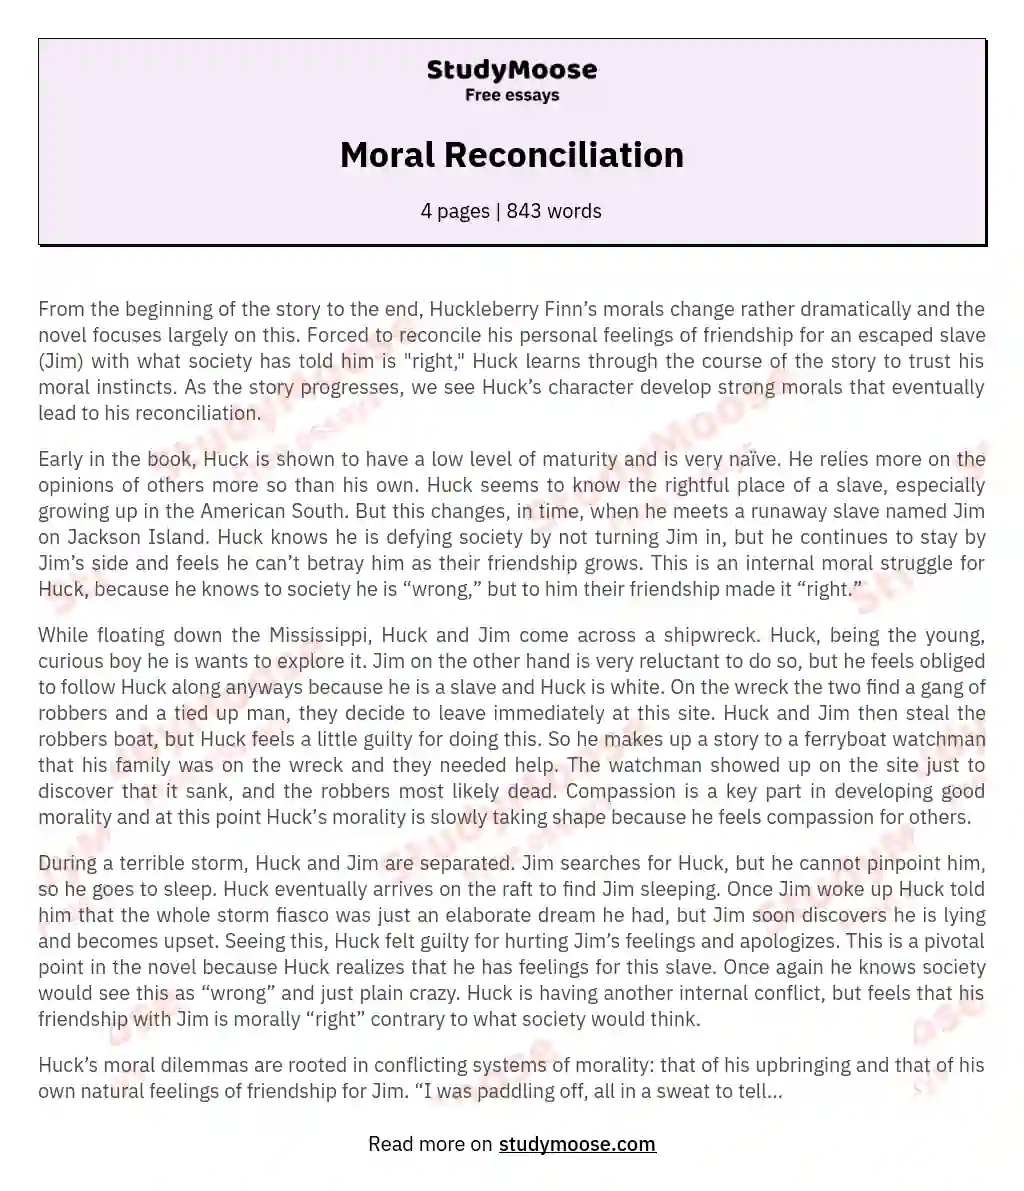 Moral Reconciliation essay